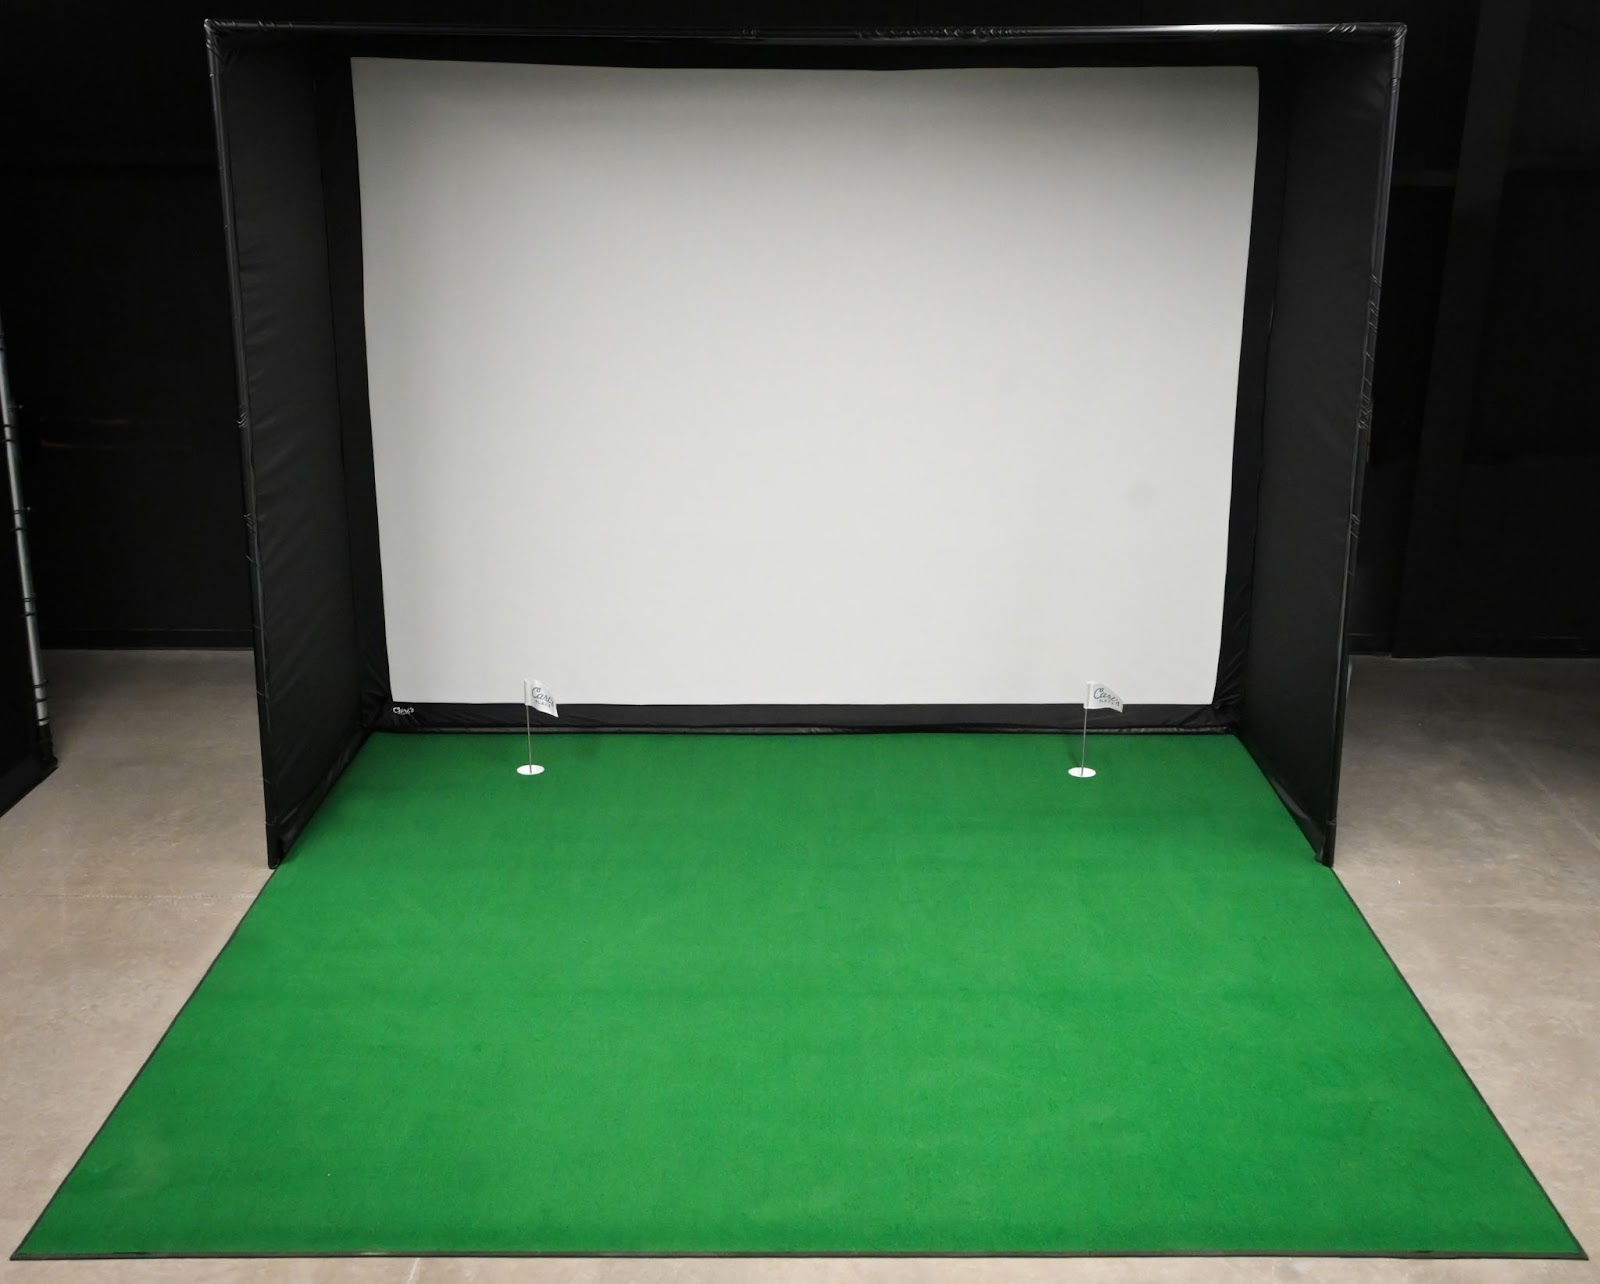 Carl's DIY Enclosure with Golf Simulator Turf